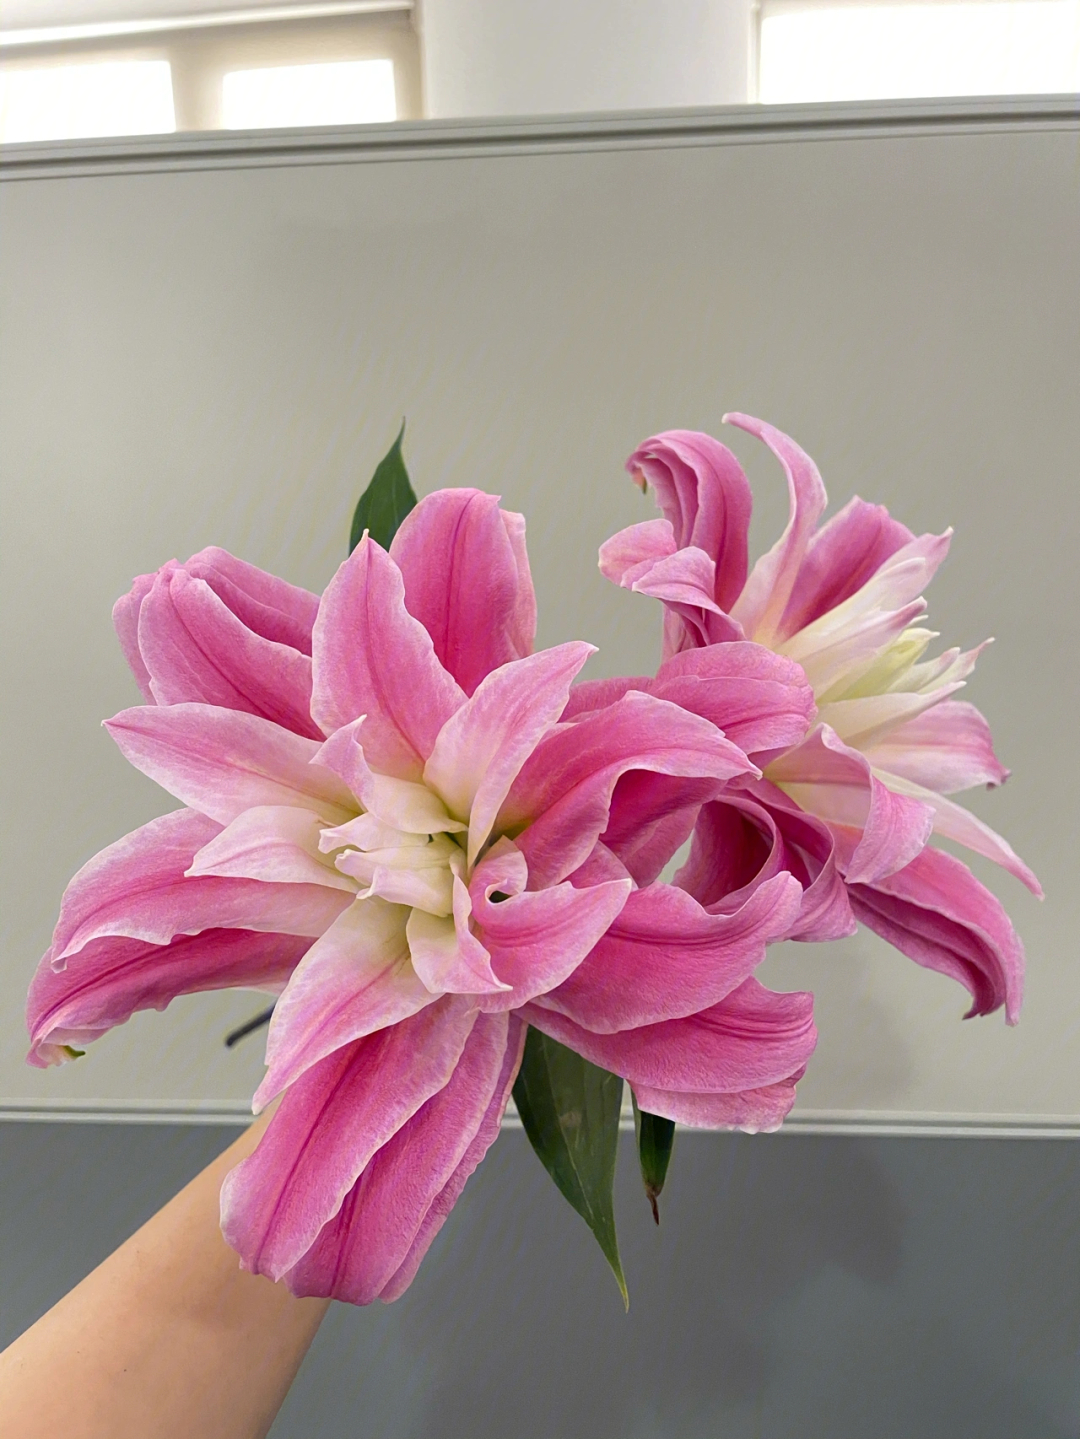 新品种的红莲重瓣百合,花型很规整,外面是深粉色,渐变的白色花心